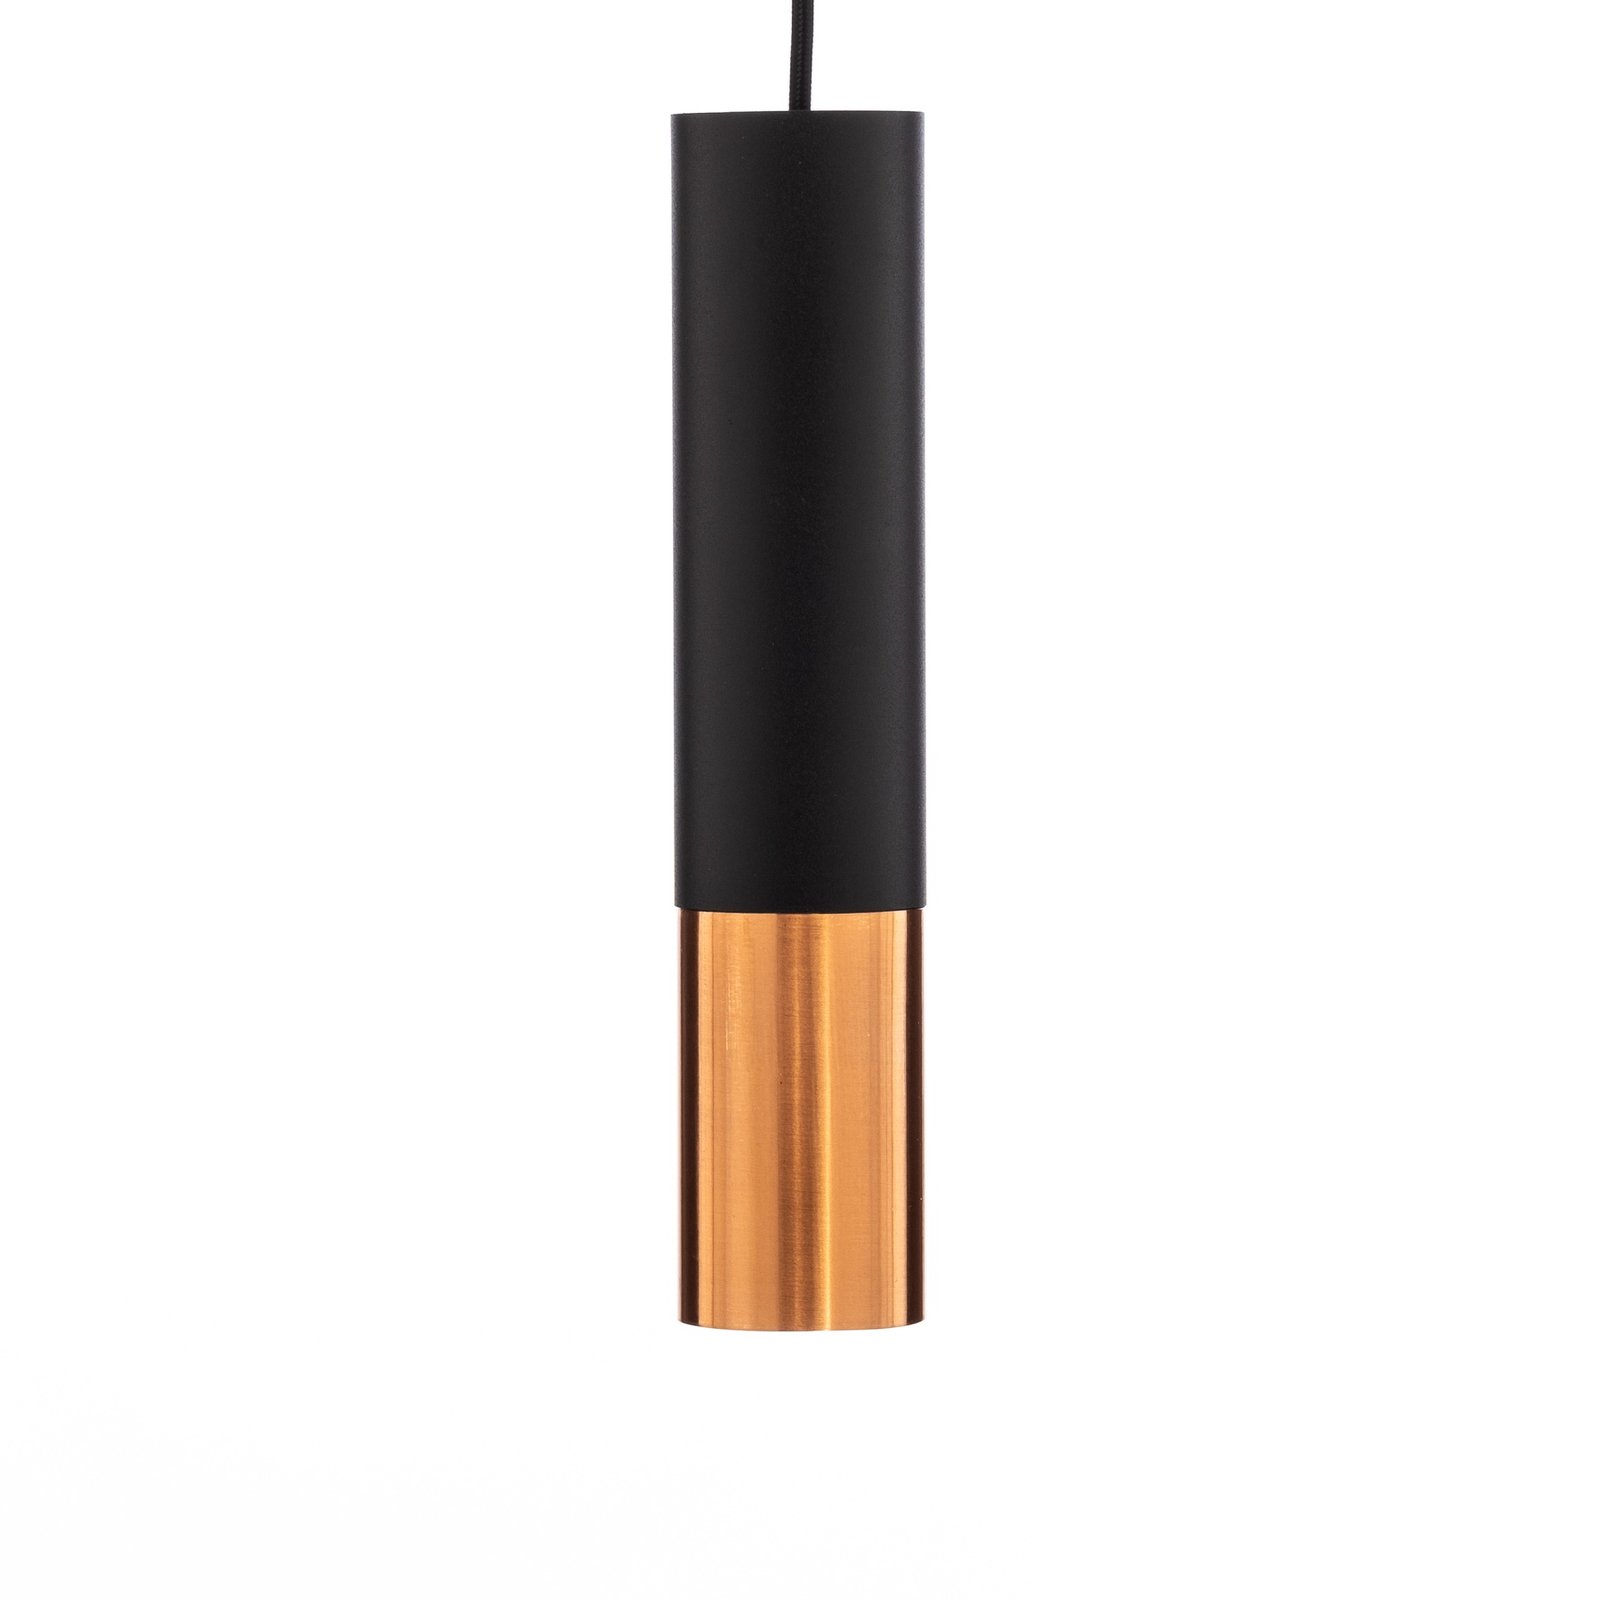 Euluna Thalassa hanglamp 1-lamp GU10 zwart/koper